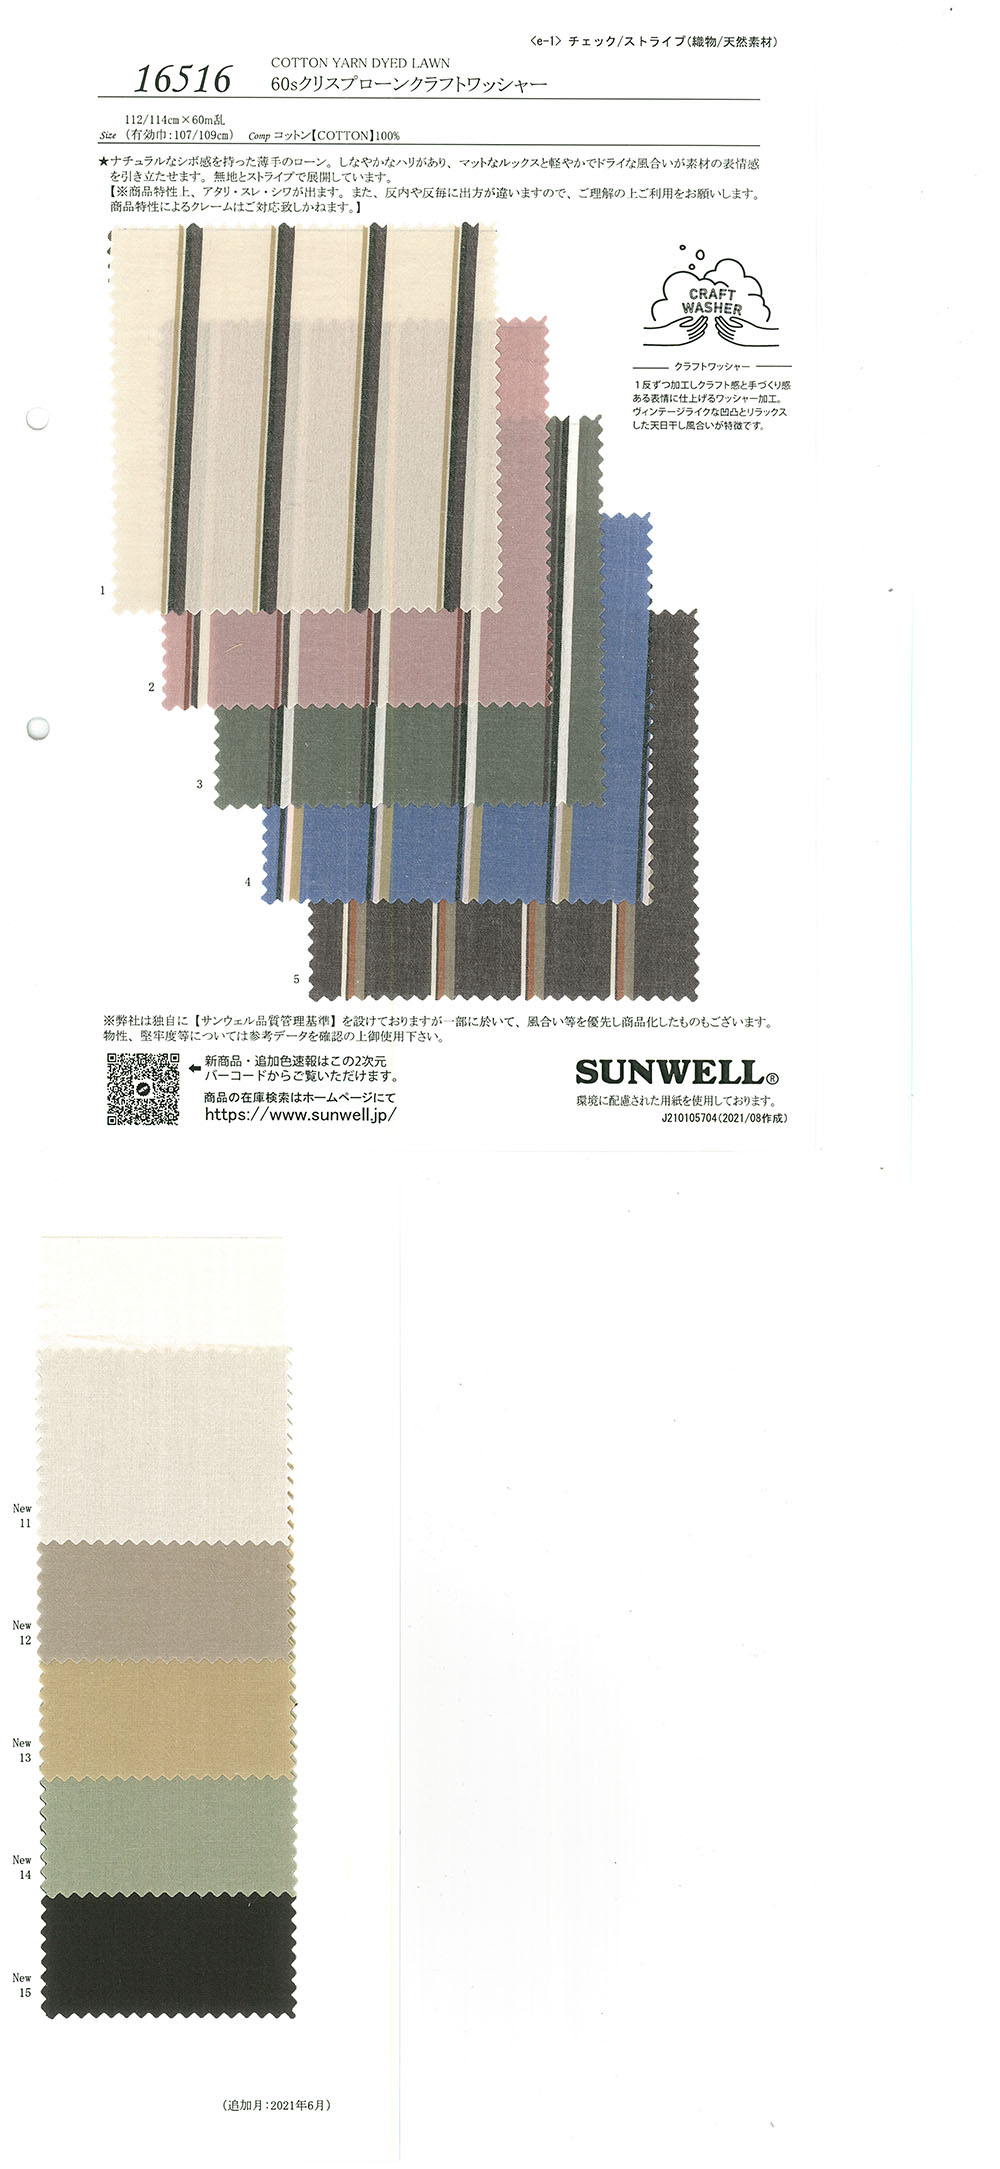 16516 60 Procesamiento De Lavadora Kraft Para Césped De Un Solo Hilo[Fabrica Textil] SUNWELL